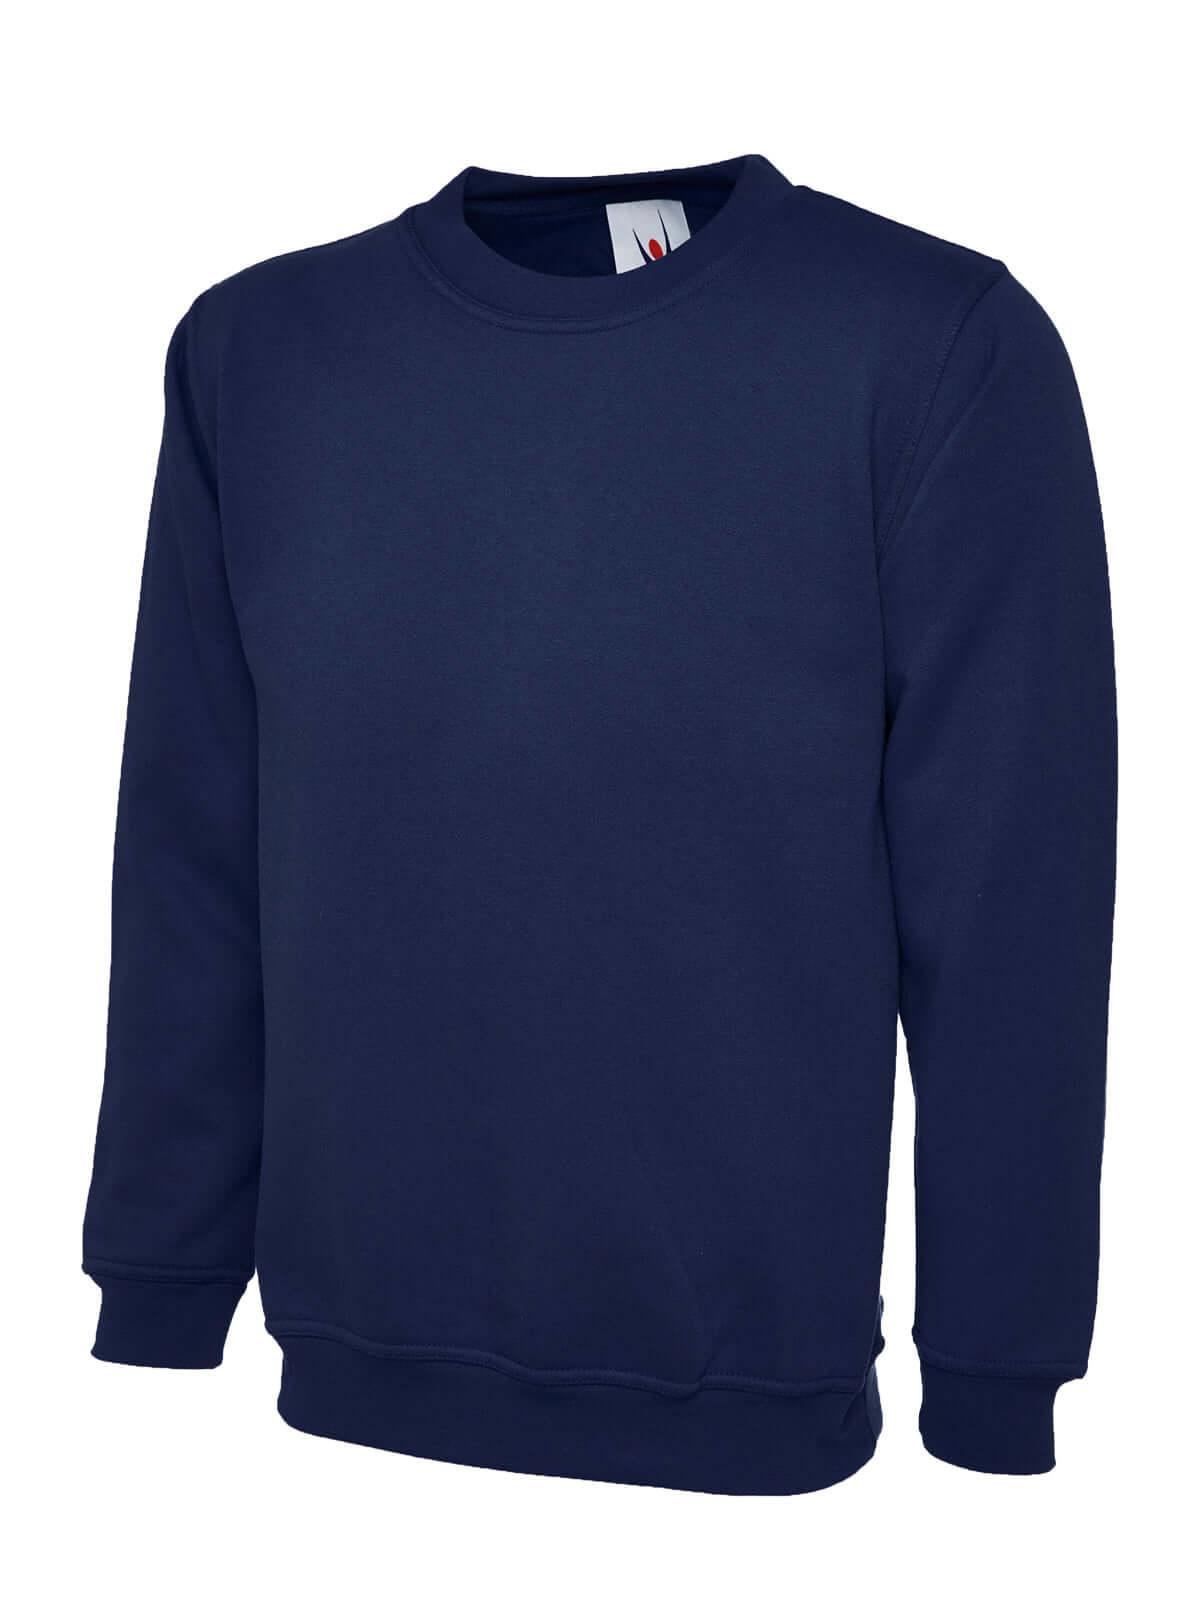 Pegasus Uniform Classic Sweatshirt - French Navy Blue